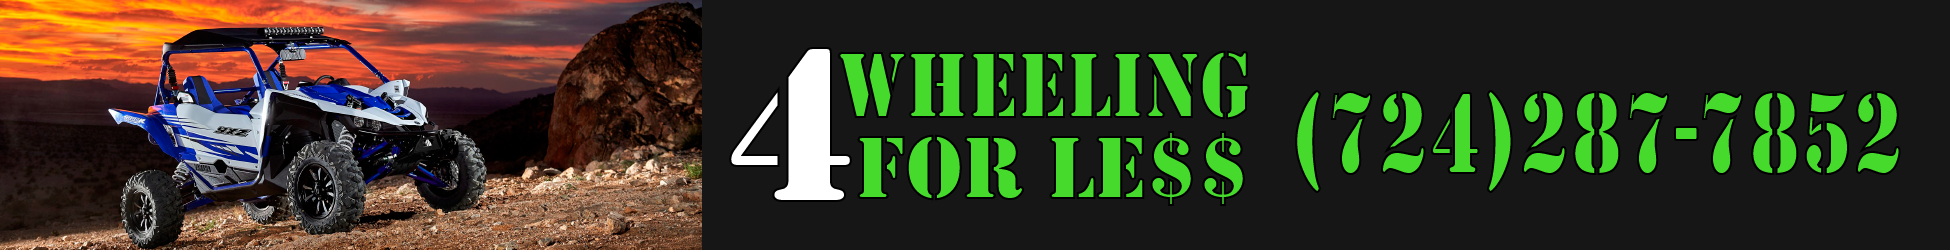 Four Wheeling For Less